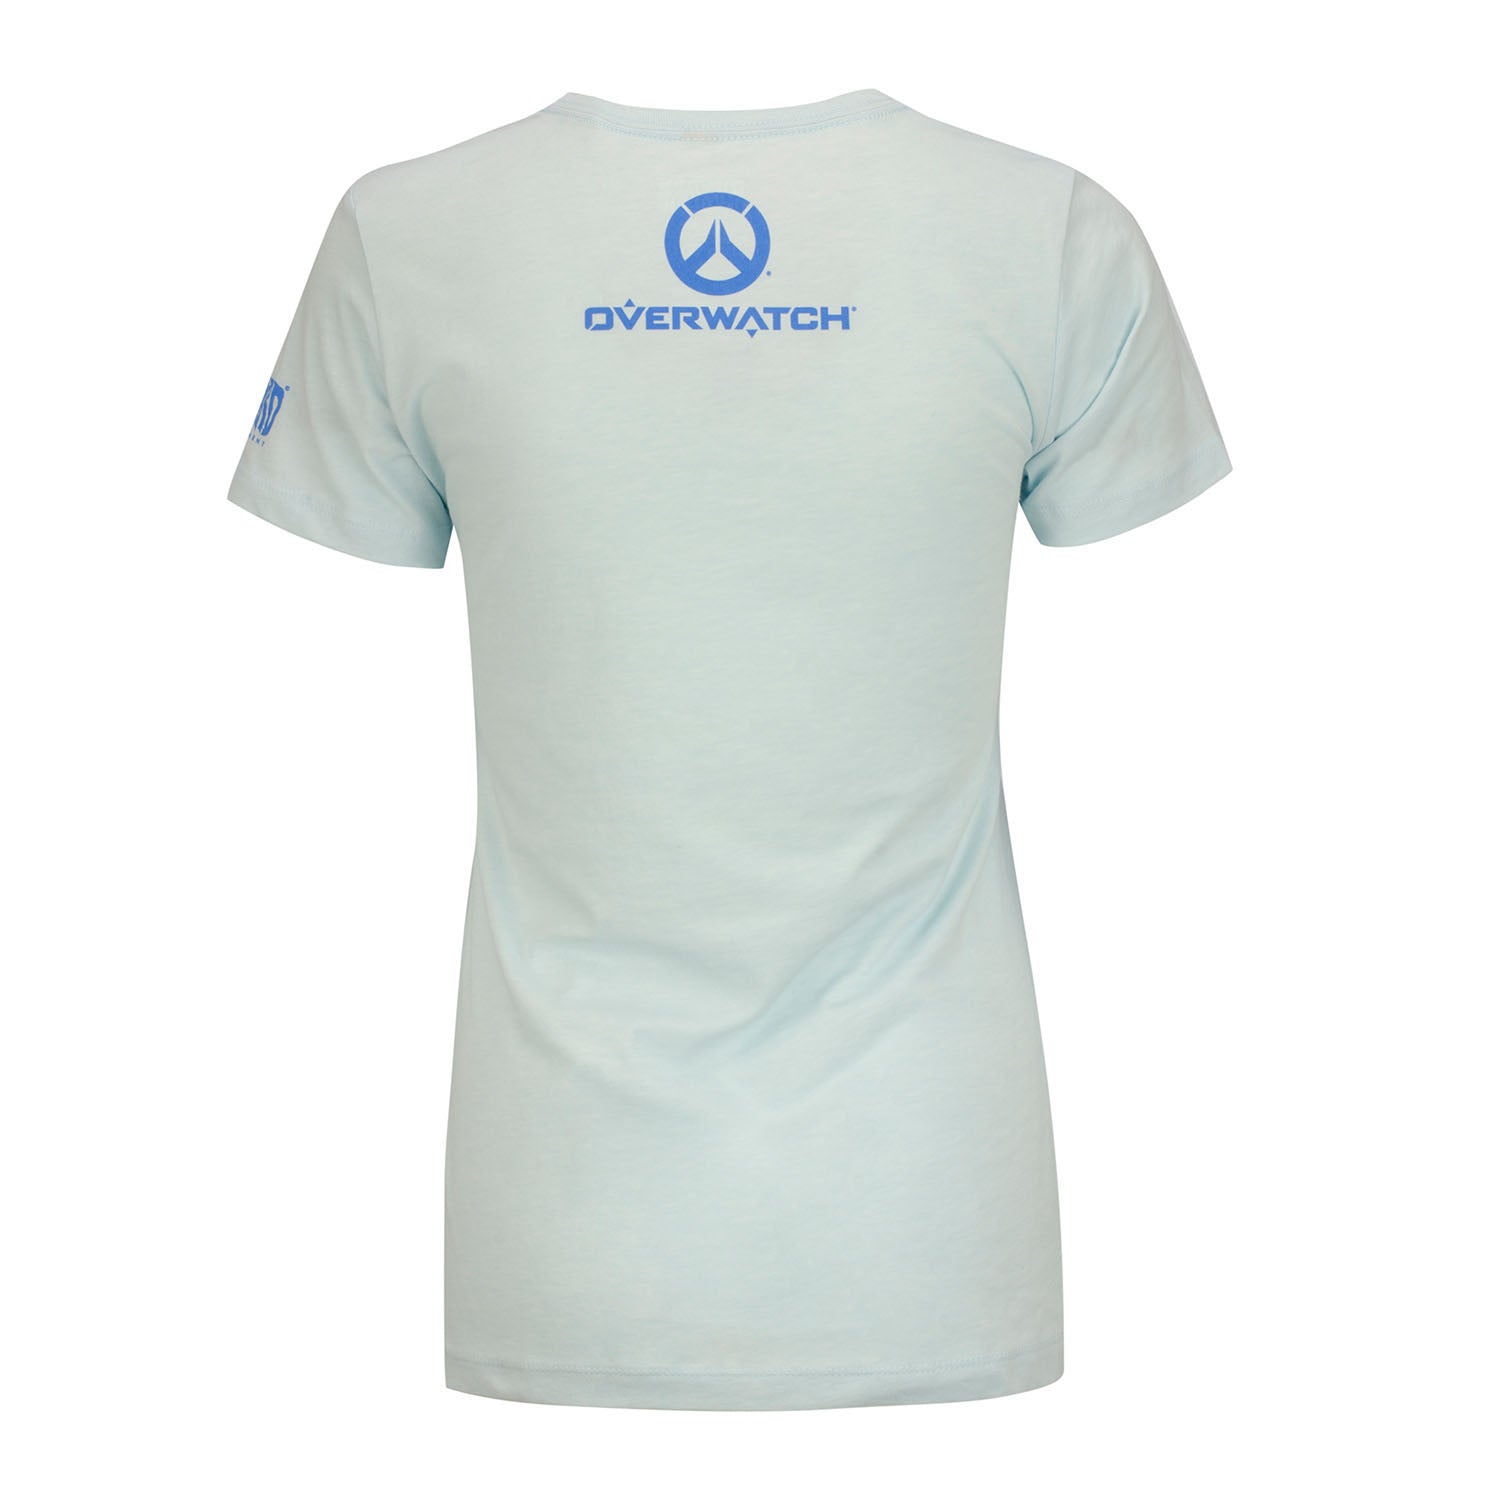 Overwatch Mei Women's Light Blue T-Shirt - Back View